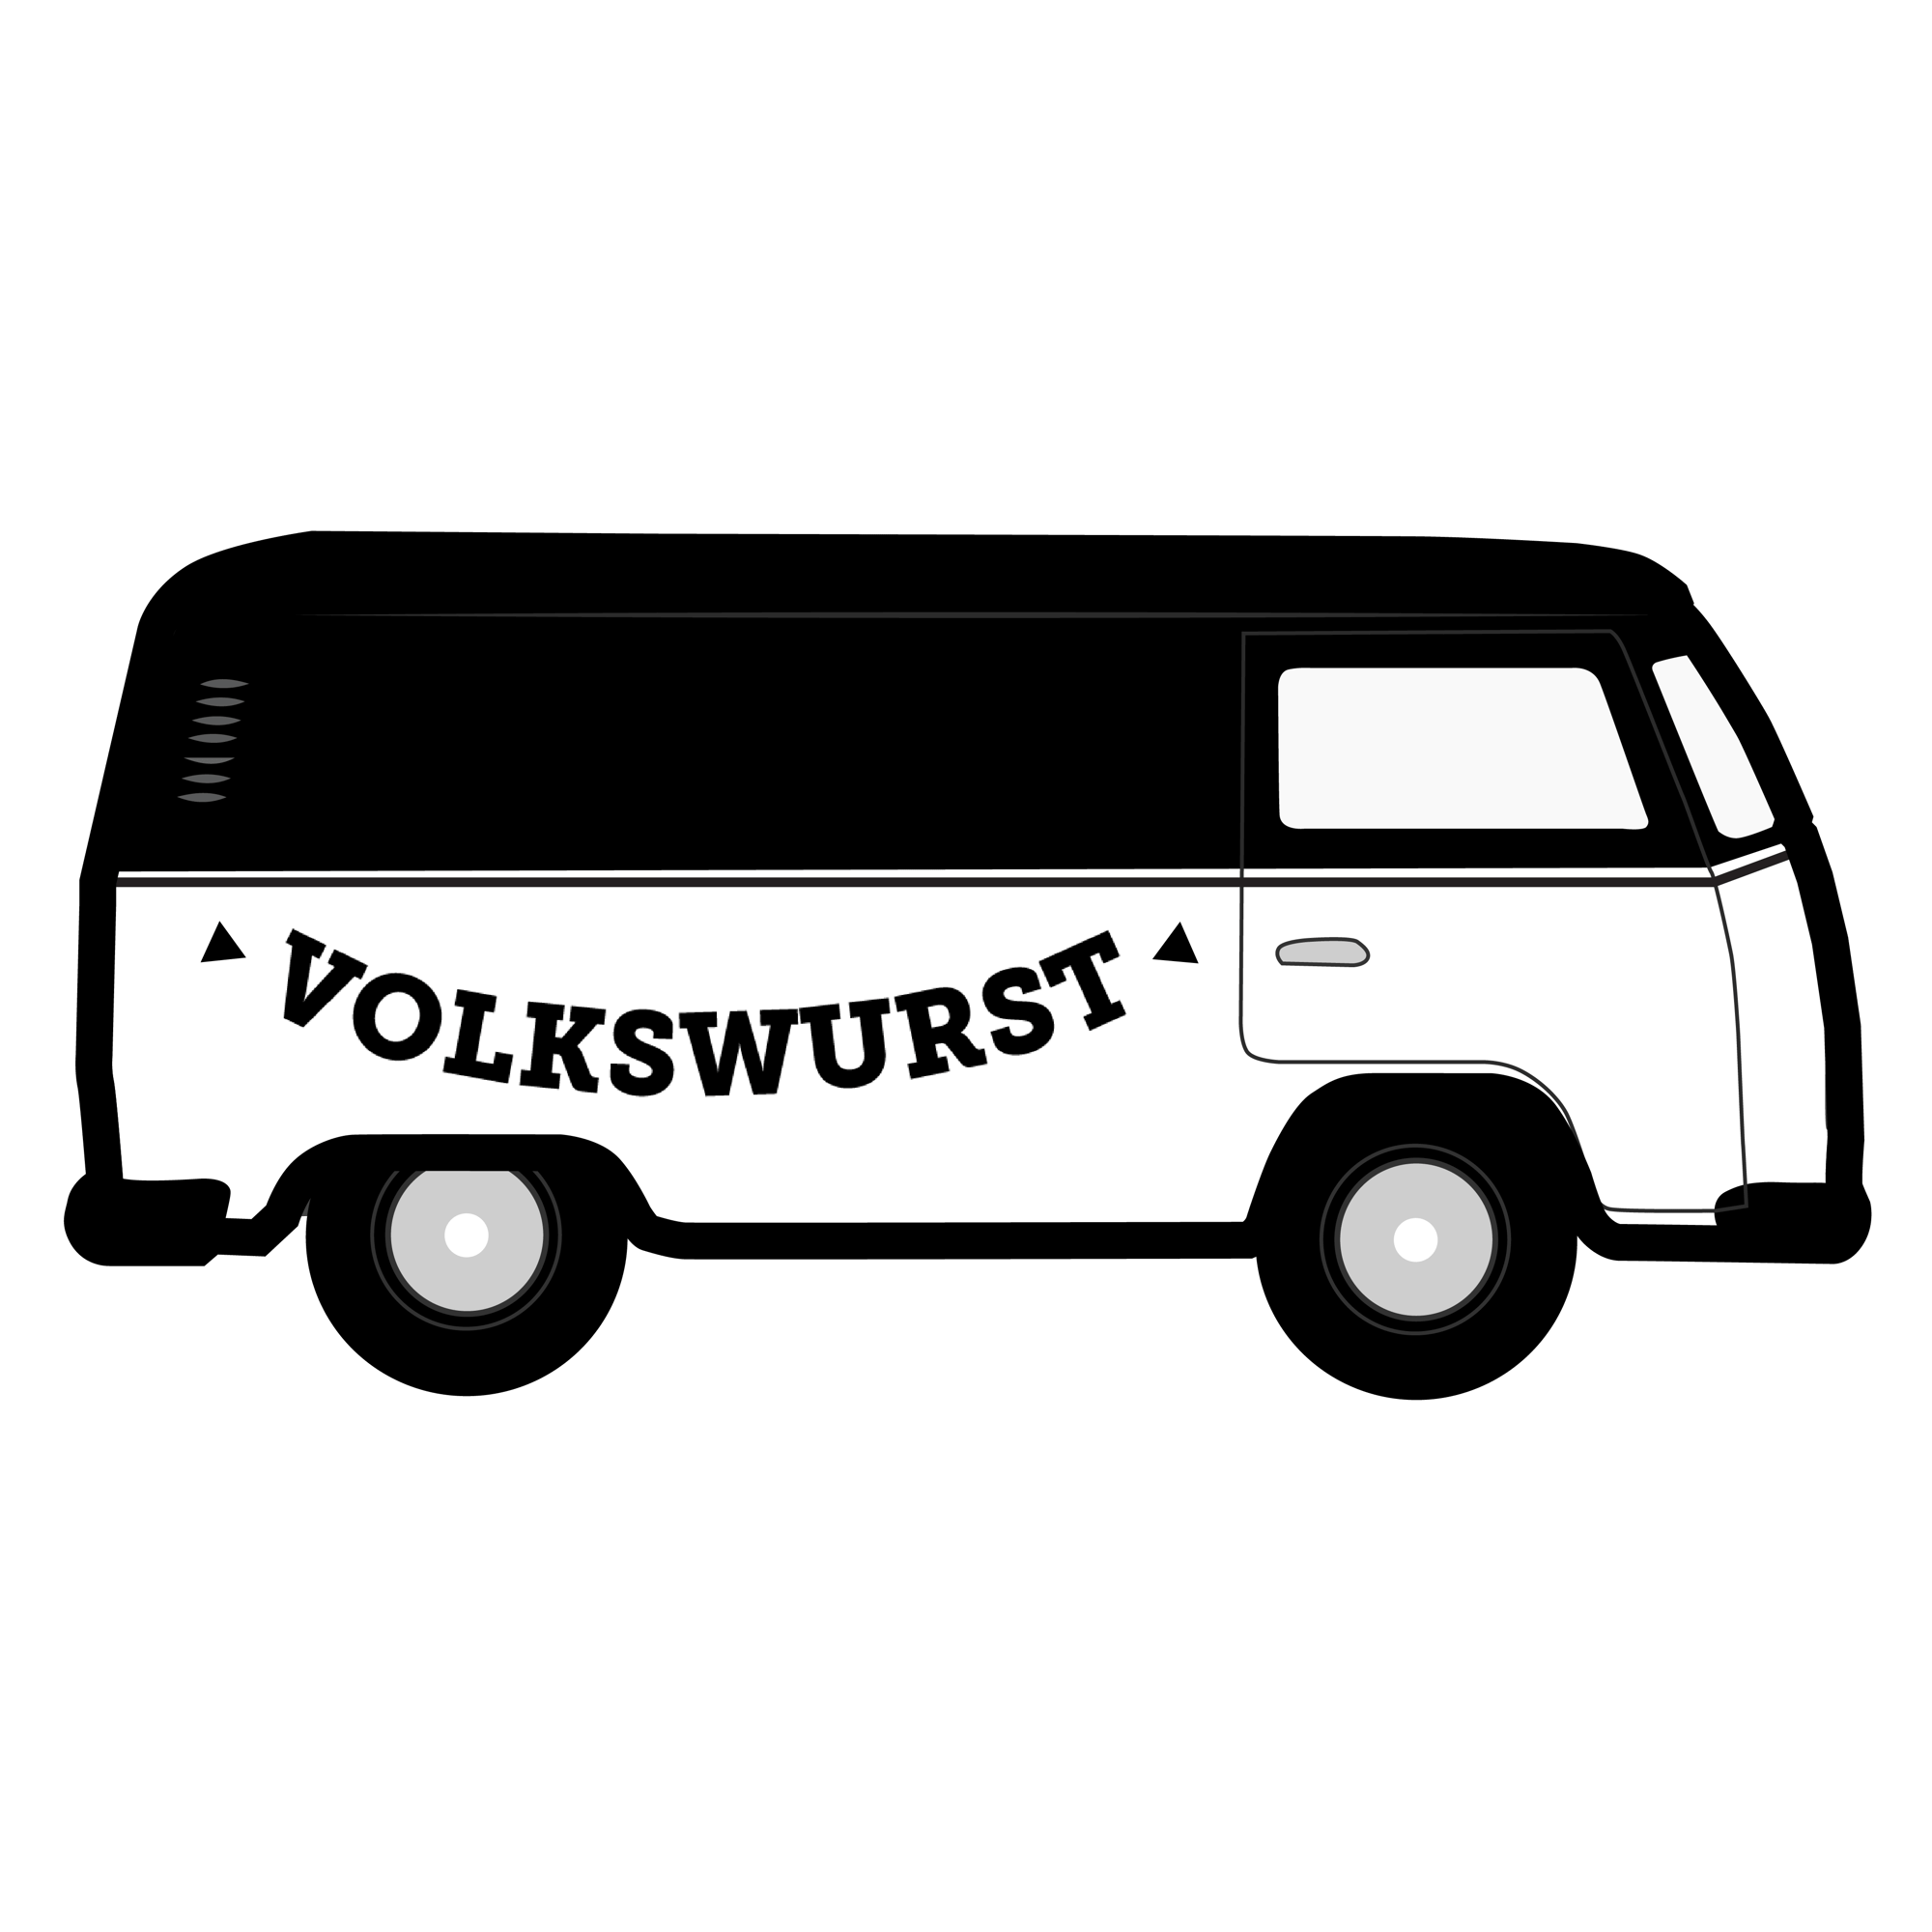 volkswurst stickers-14